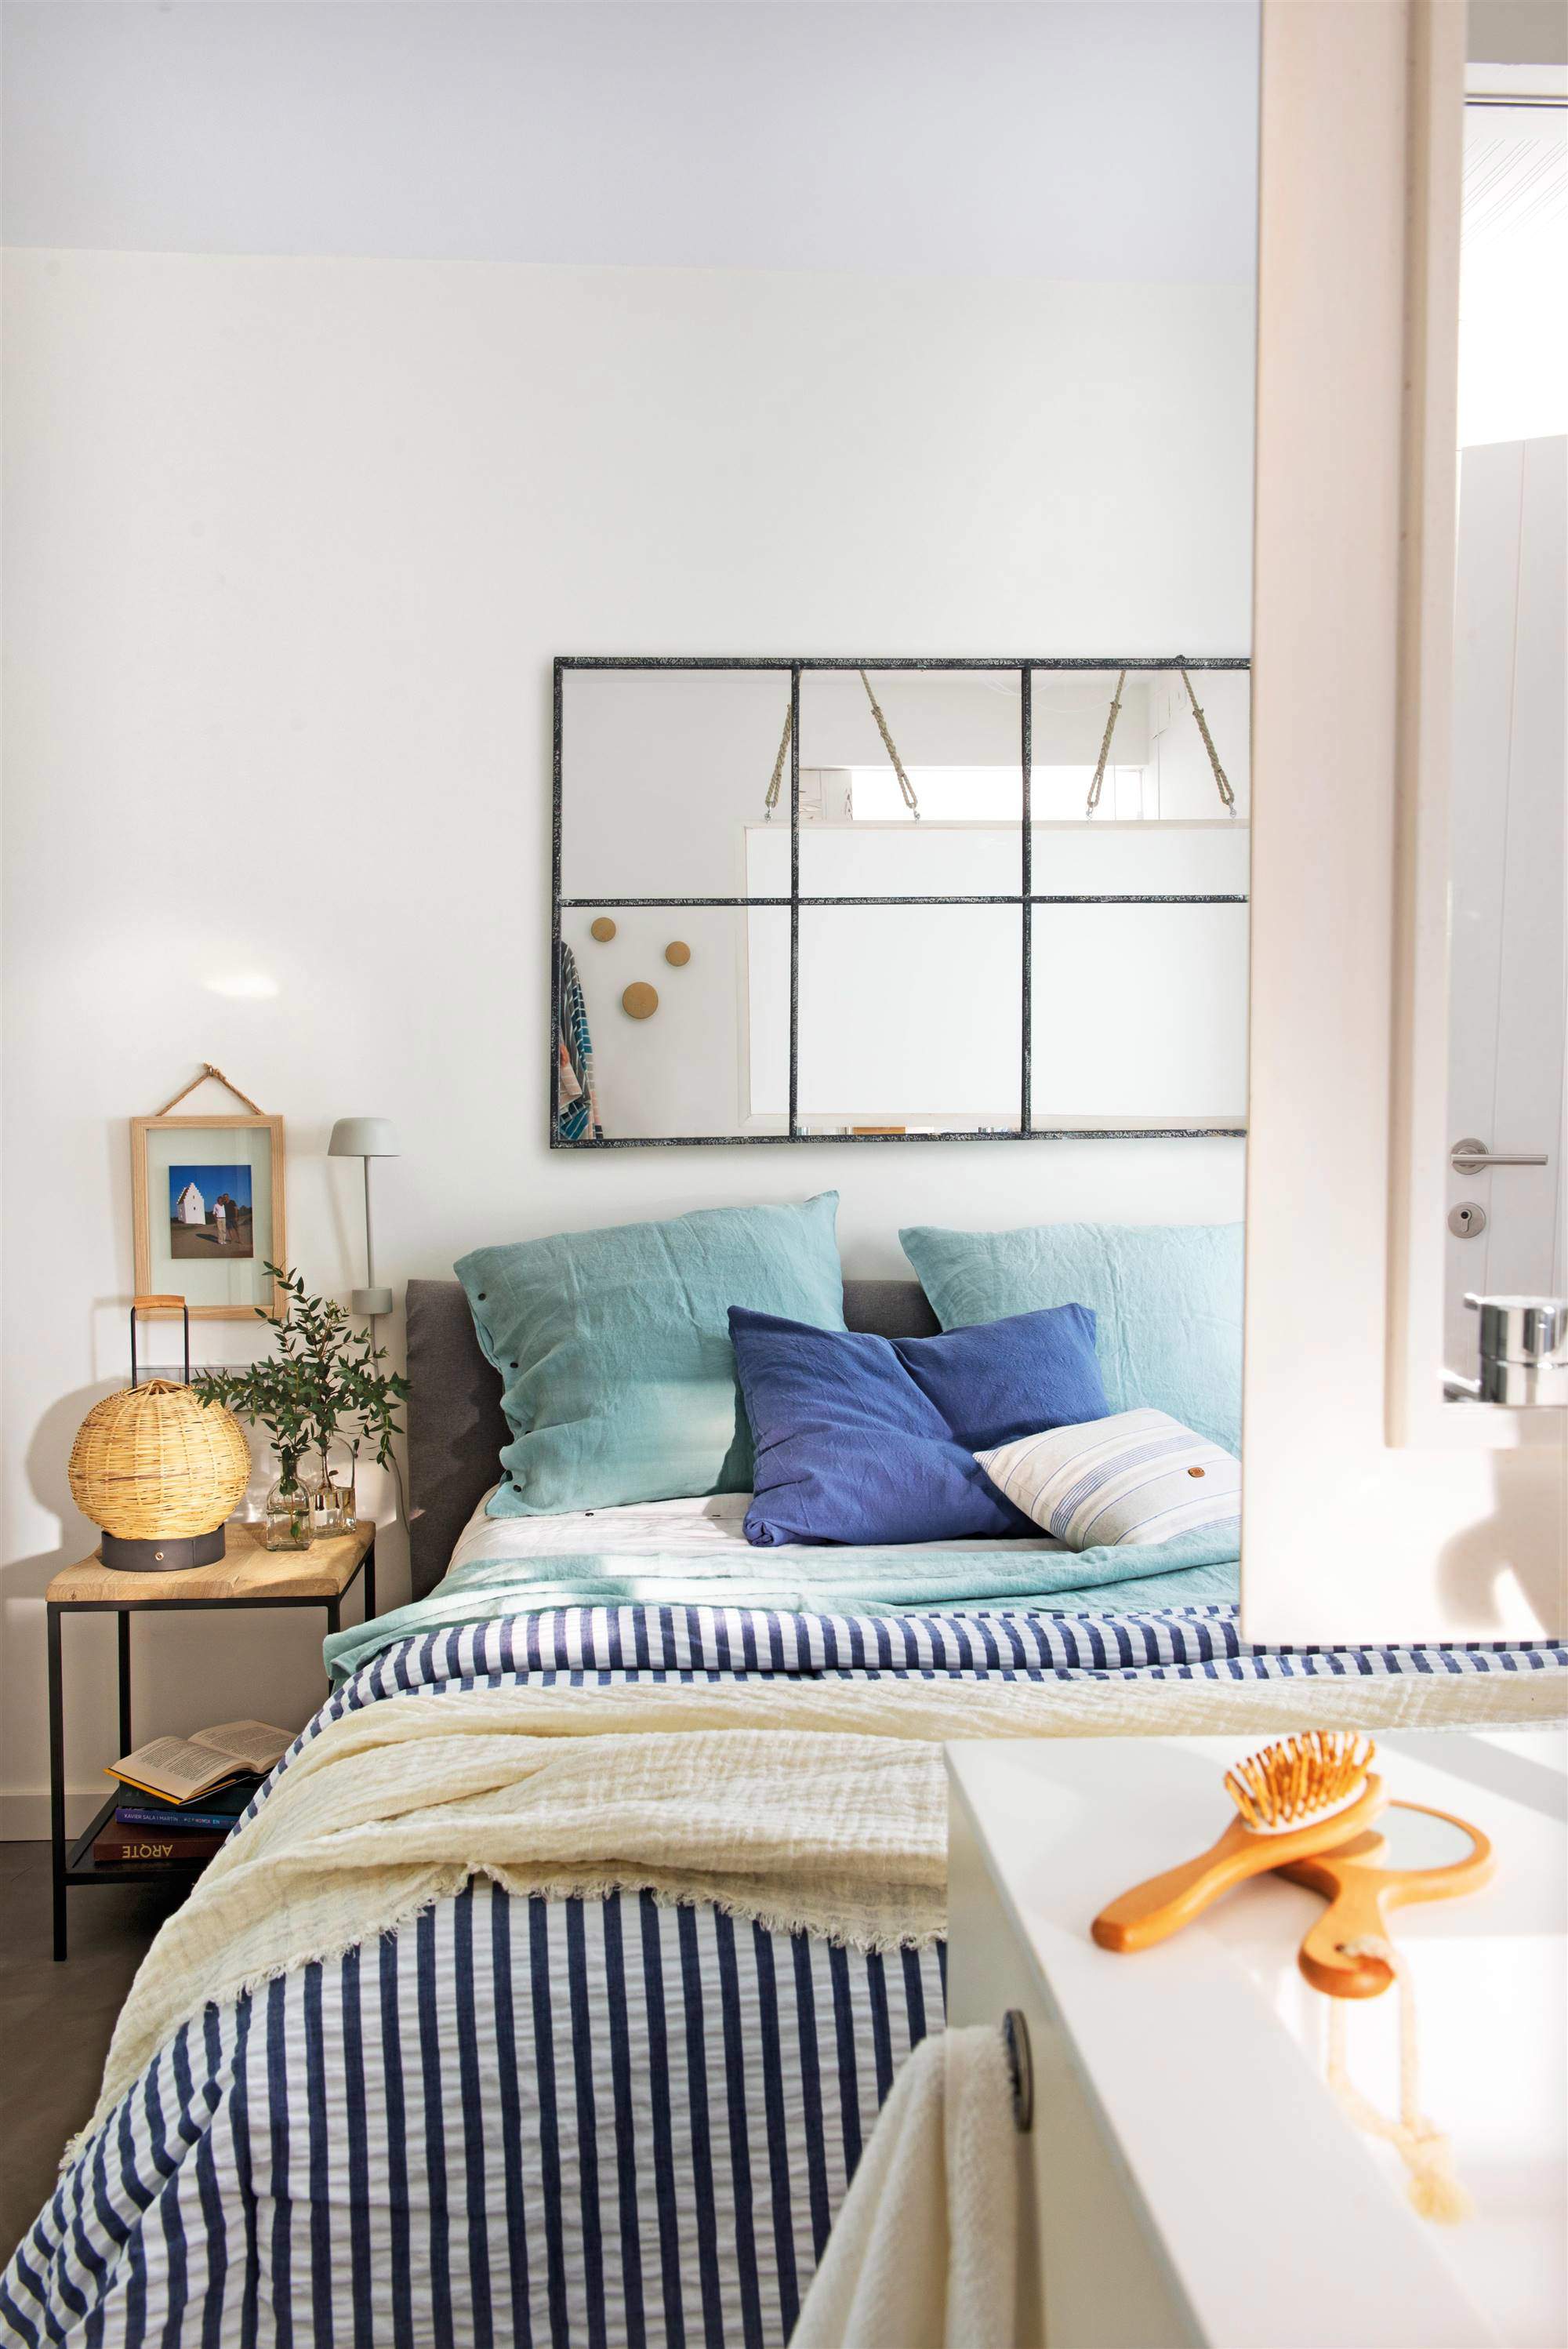 Dormitorio decorado en blanco y azul con espejo en la pared de la cama